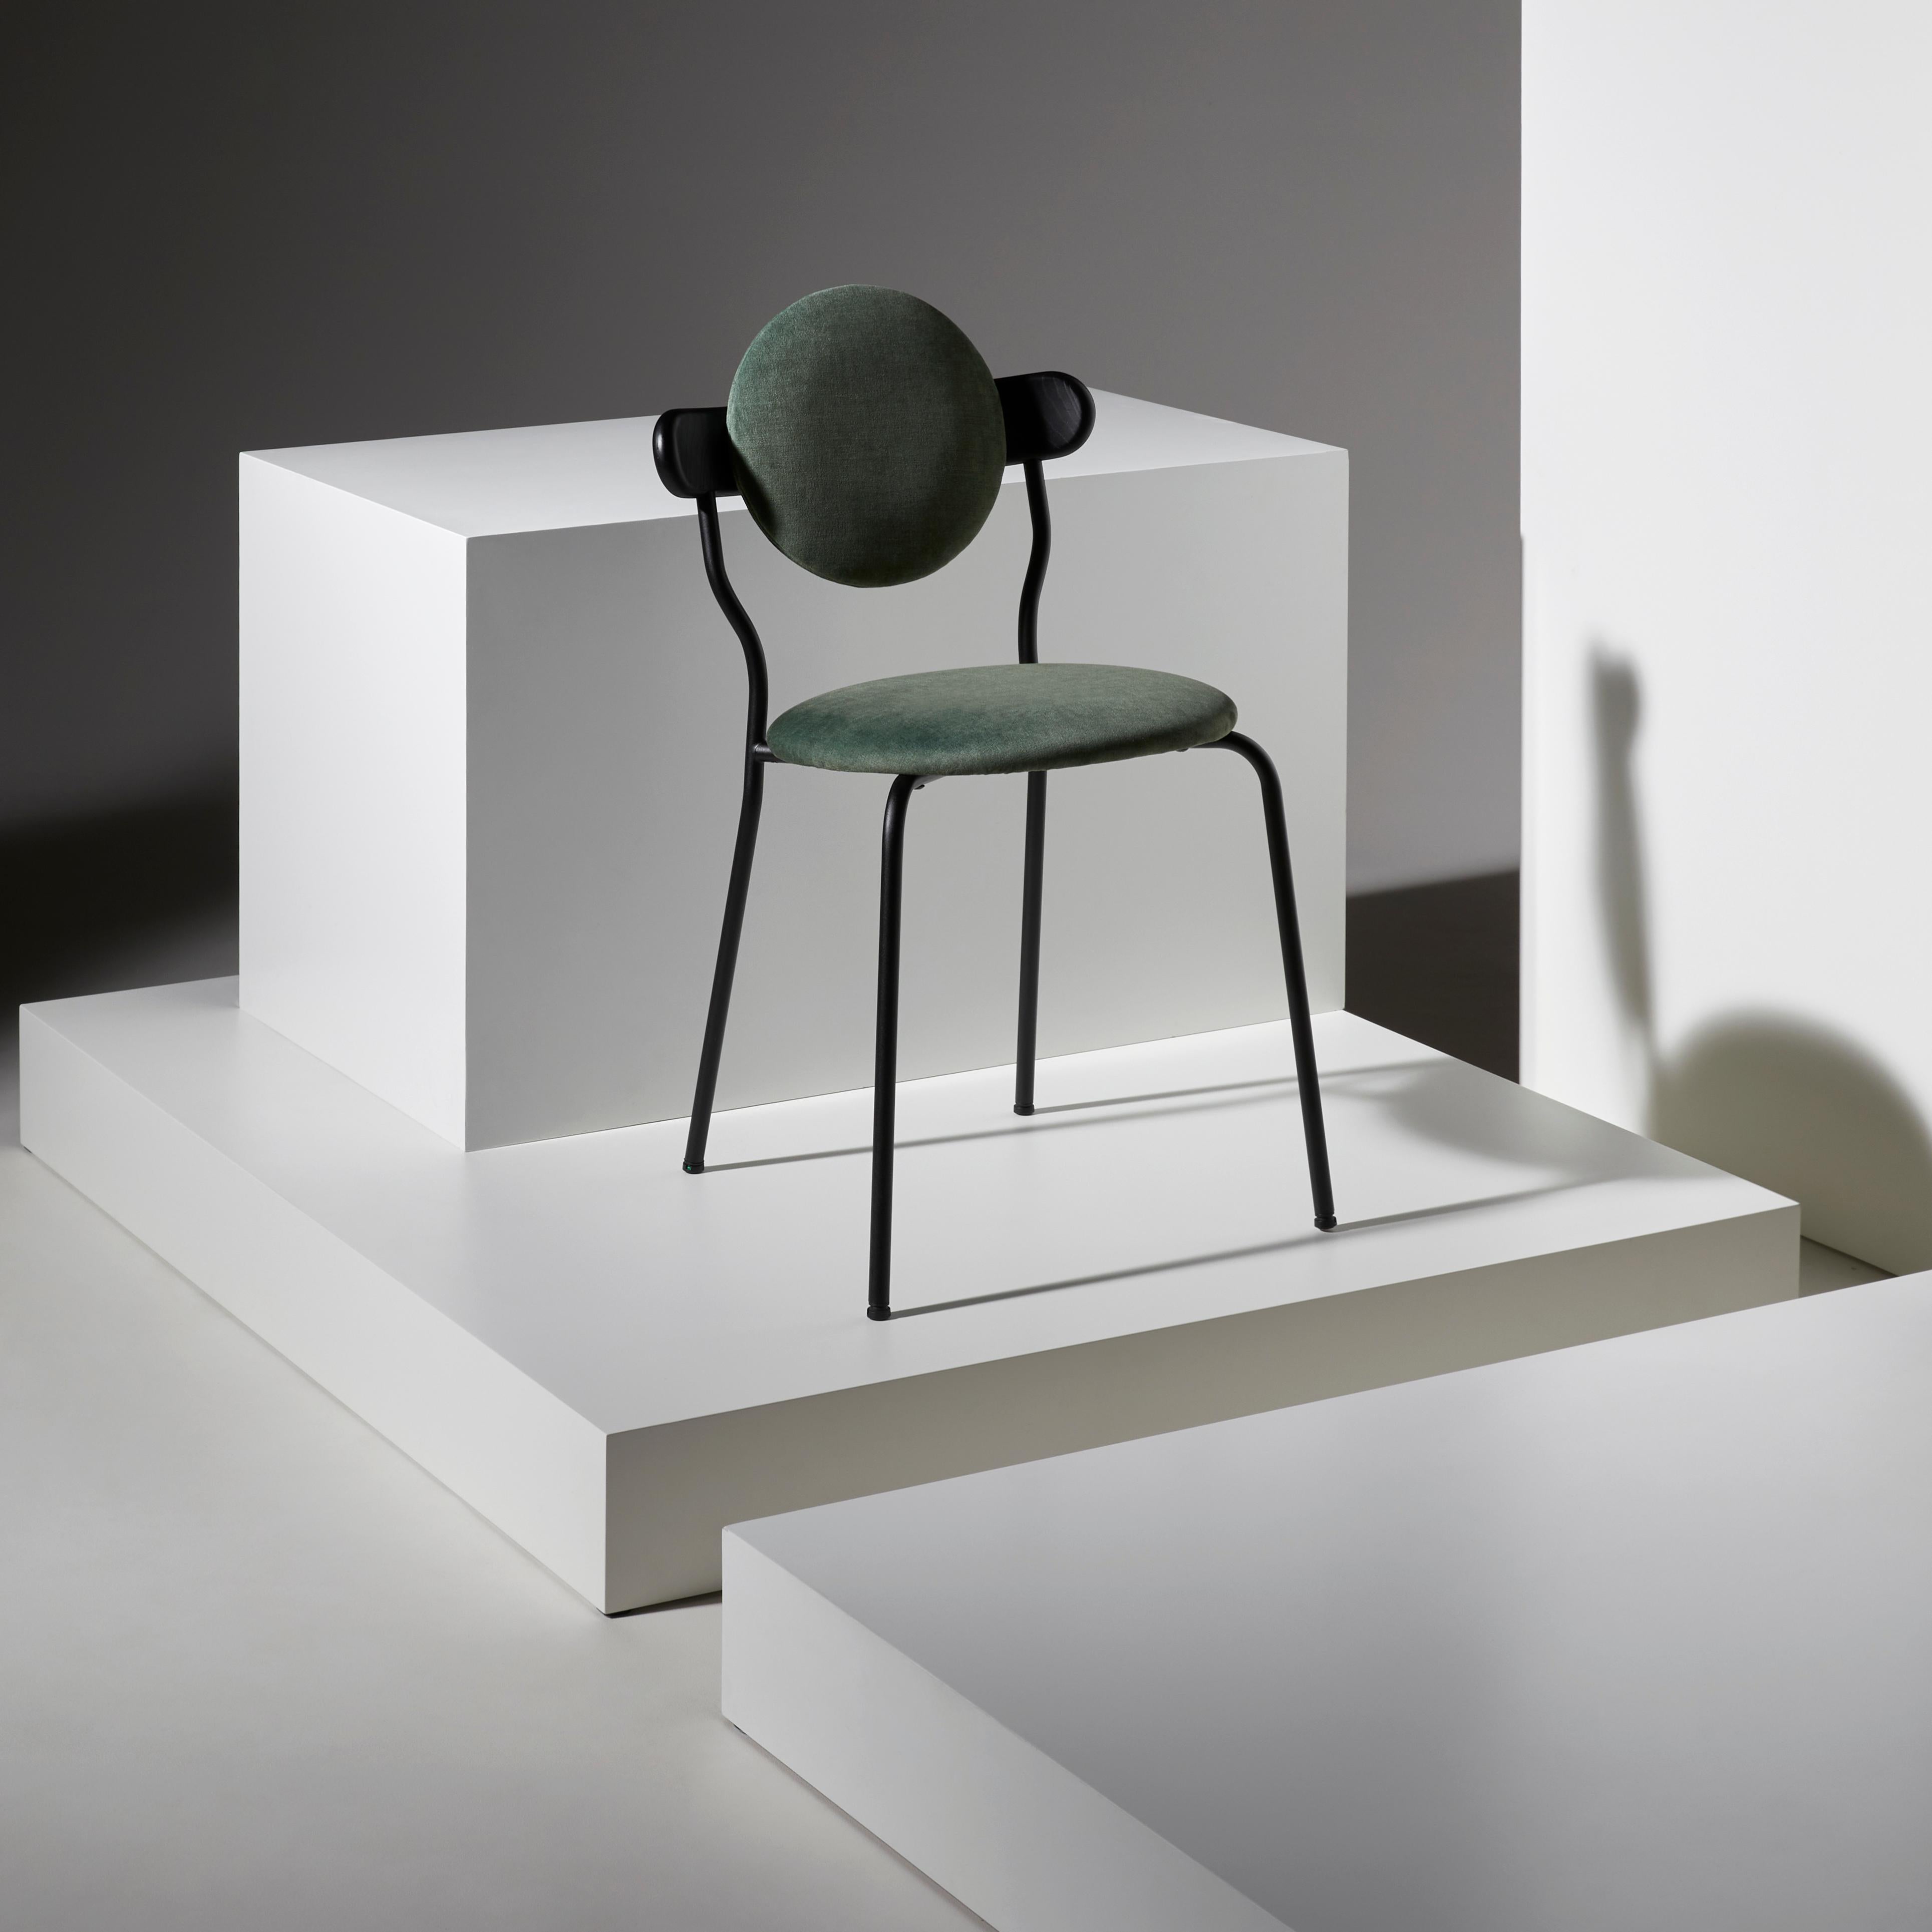 Planet bar est une chaise haute rembourrée inspirée de la silhouette distinctive de la planète Saturne.
La version bar de la chaise Planet originale offre une solution confortable et pratique pour s'asseoir au bar tout en gardant le même style